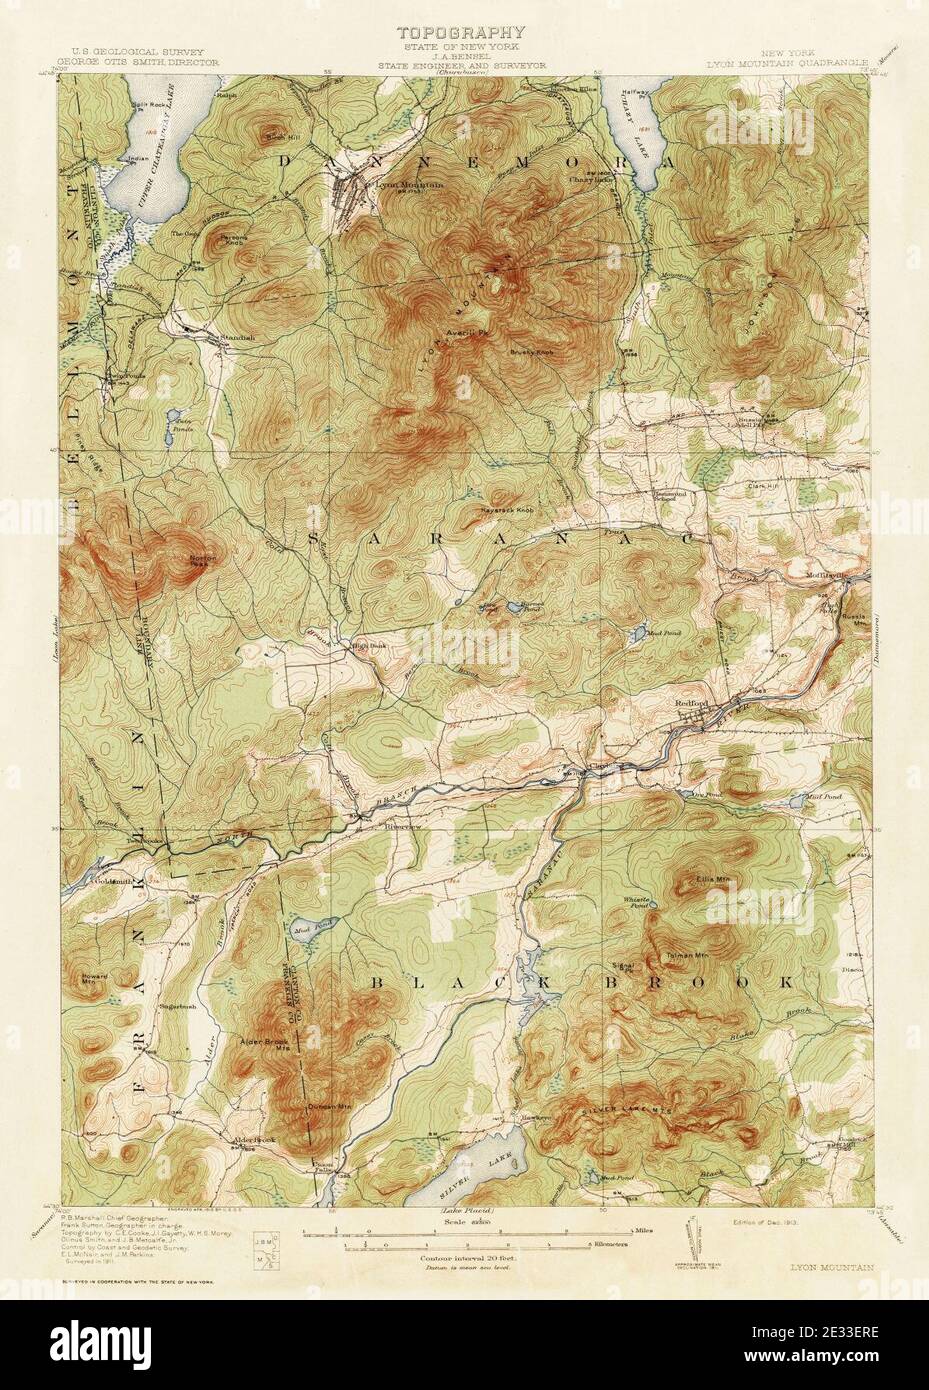 Lyon Mountain New York USGS topo map 1911. Stock Photo